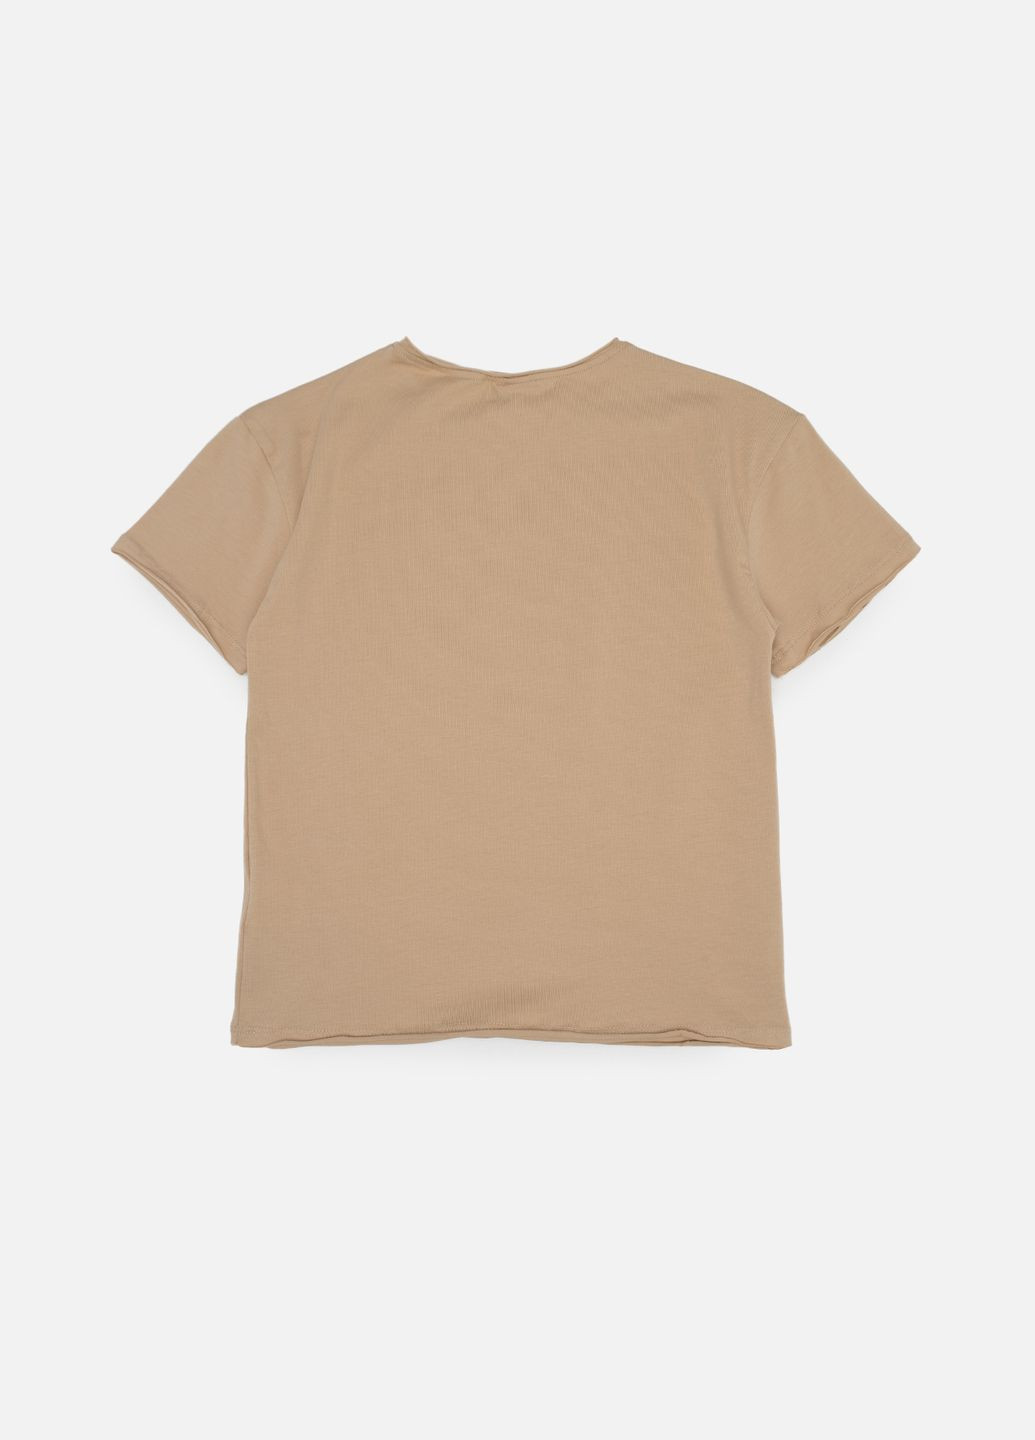 Бежева літня футболка з коротким рукавом для хлопчика колір бежевий цб-00243586 Difa